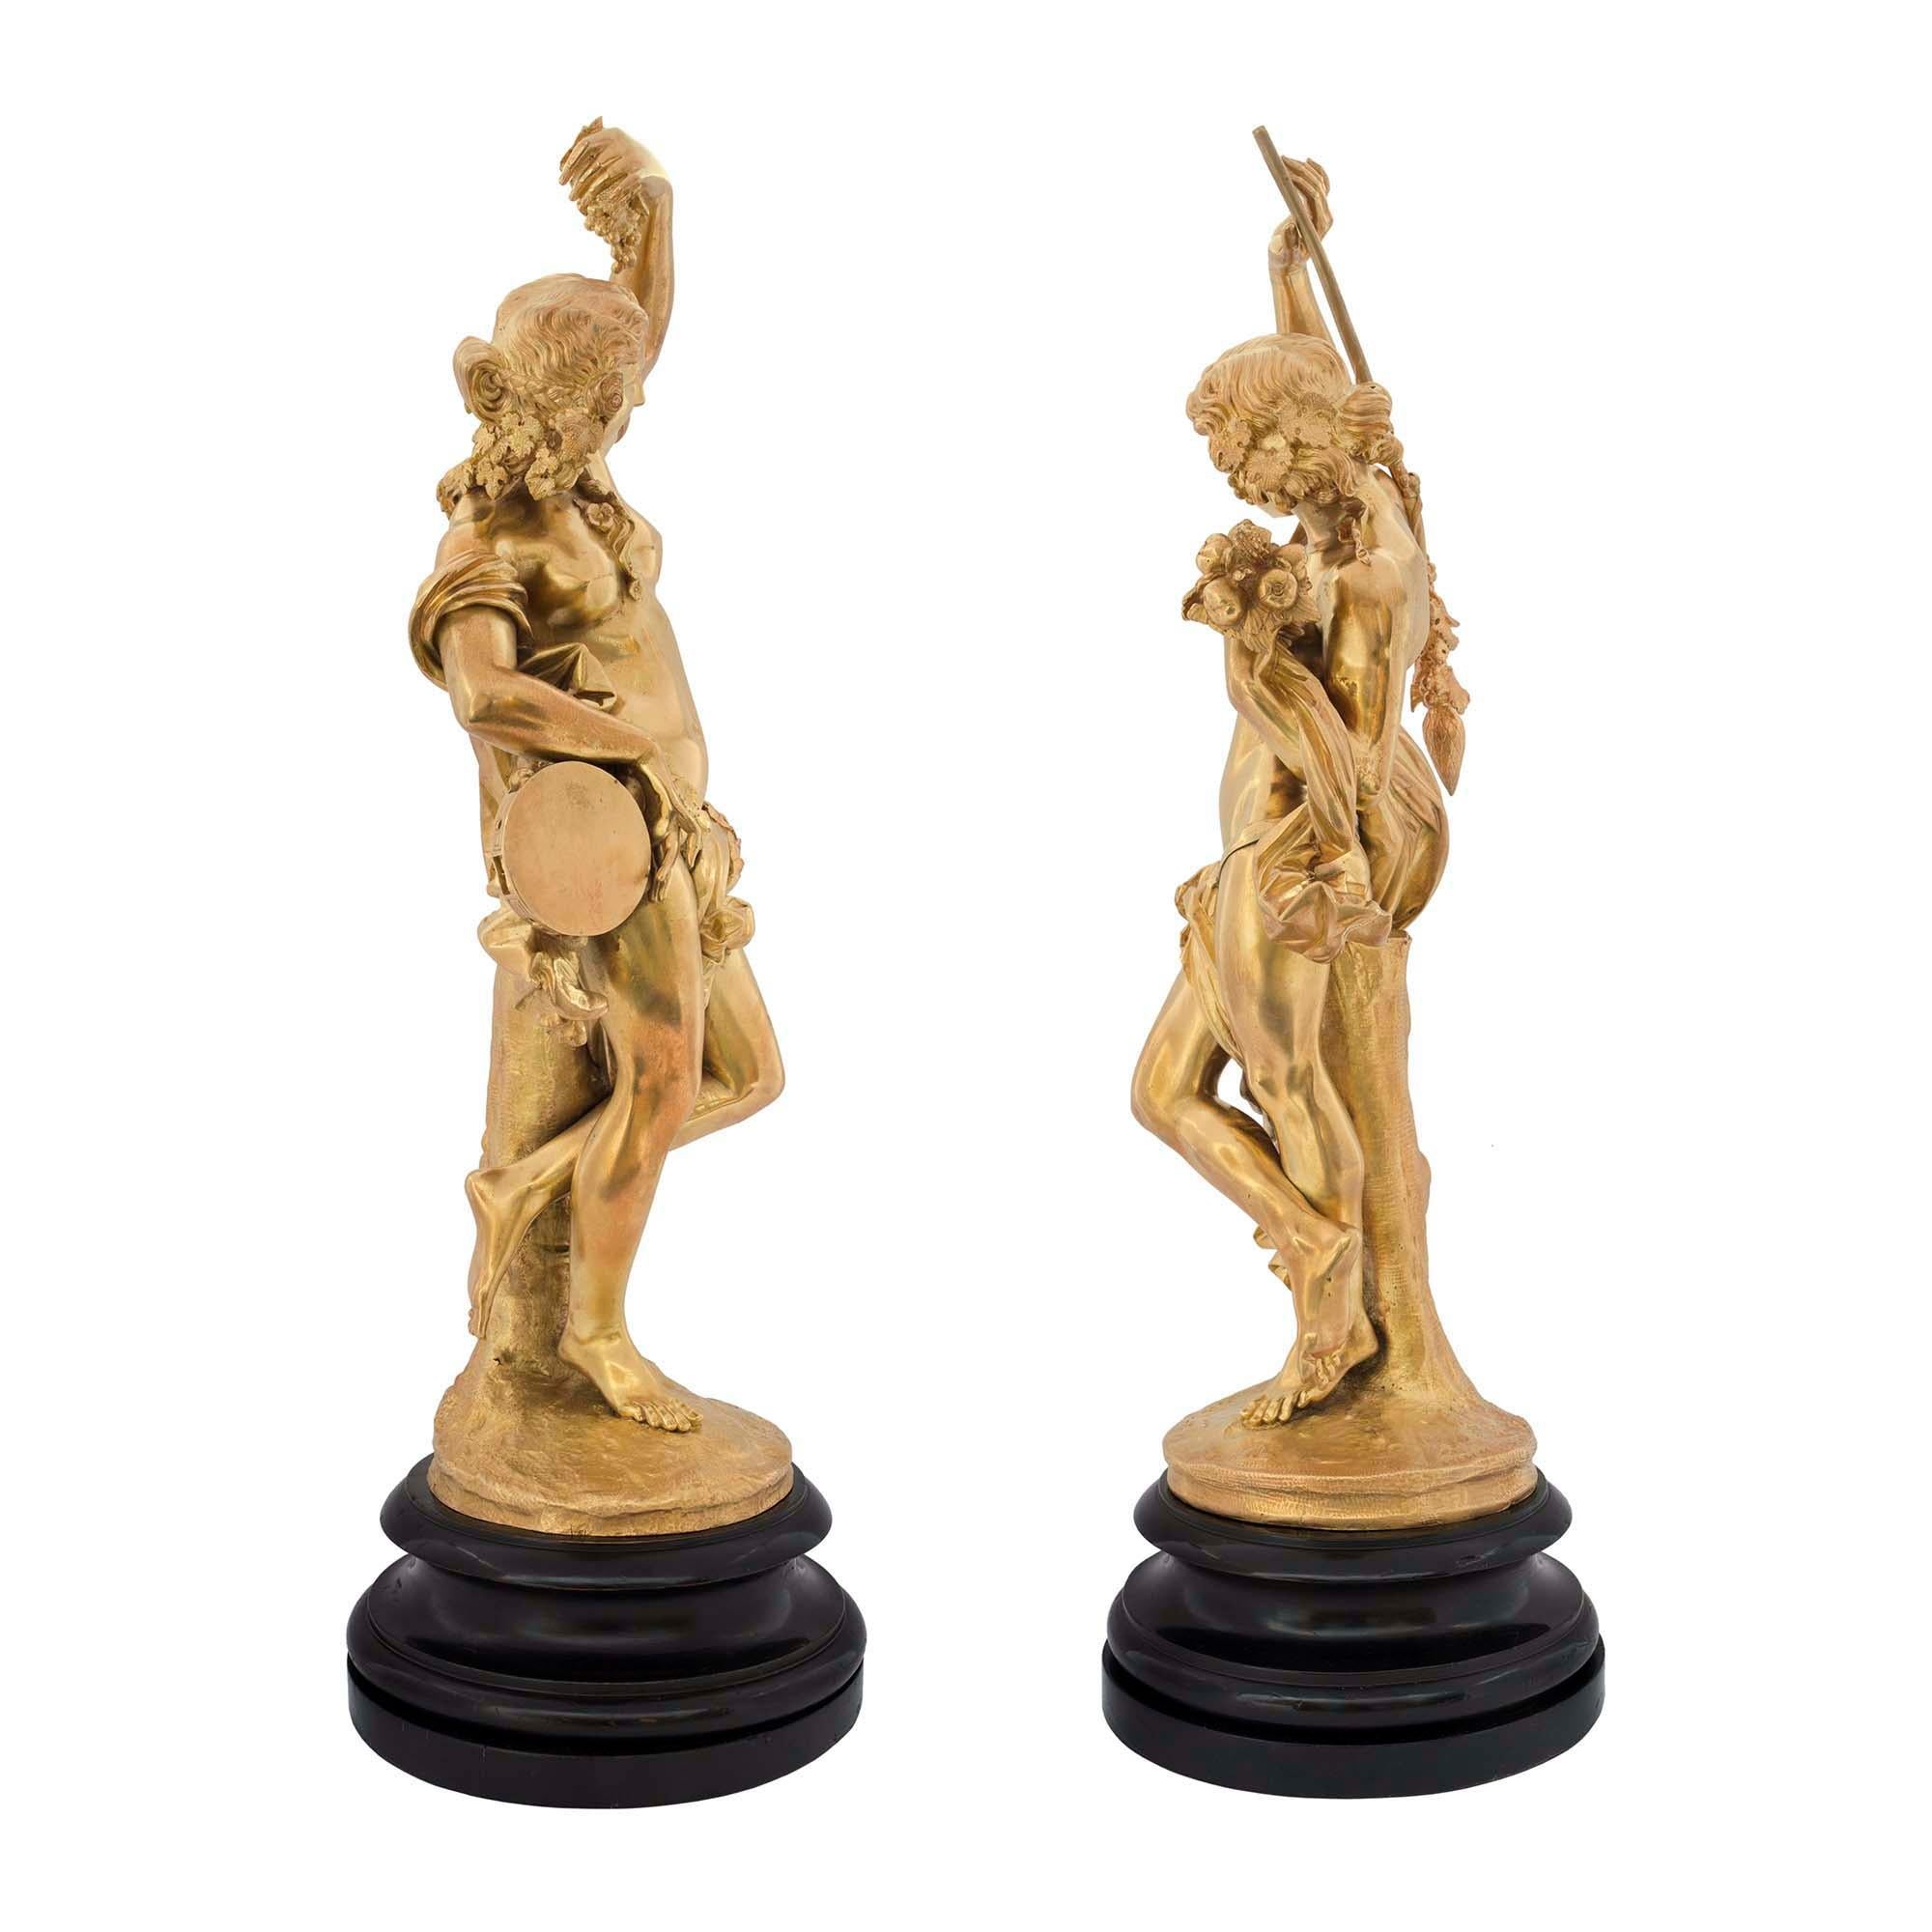 Paire de statues de fête en bronze doré de style Louis XVI, signée Devaulx. À gauche, elle est appuyée sur une souche d'arbre, drapée dans un vêtement fluide, avec un tambourin dans une main et une grappe de raisin dans l'autre. Le mâle à droite est